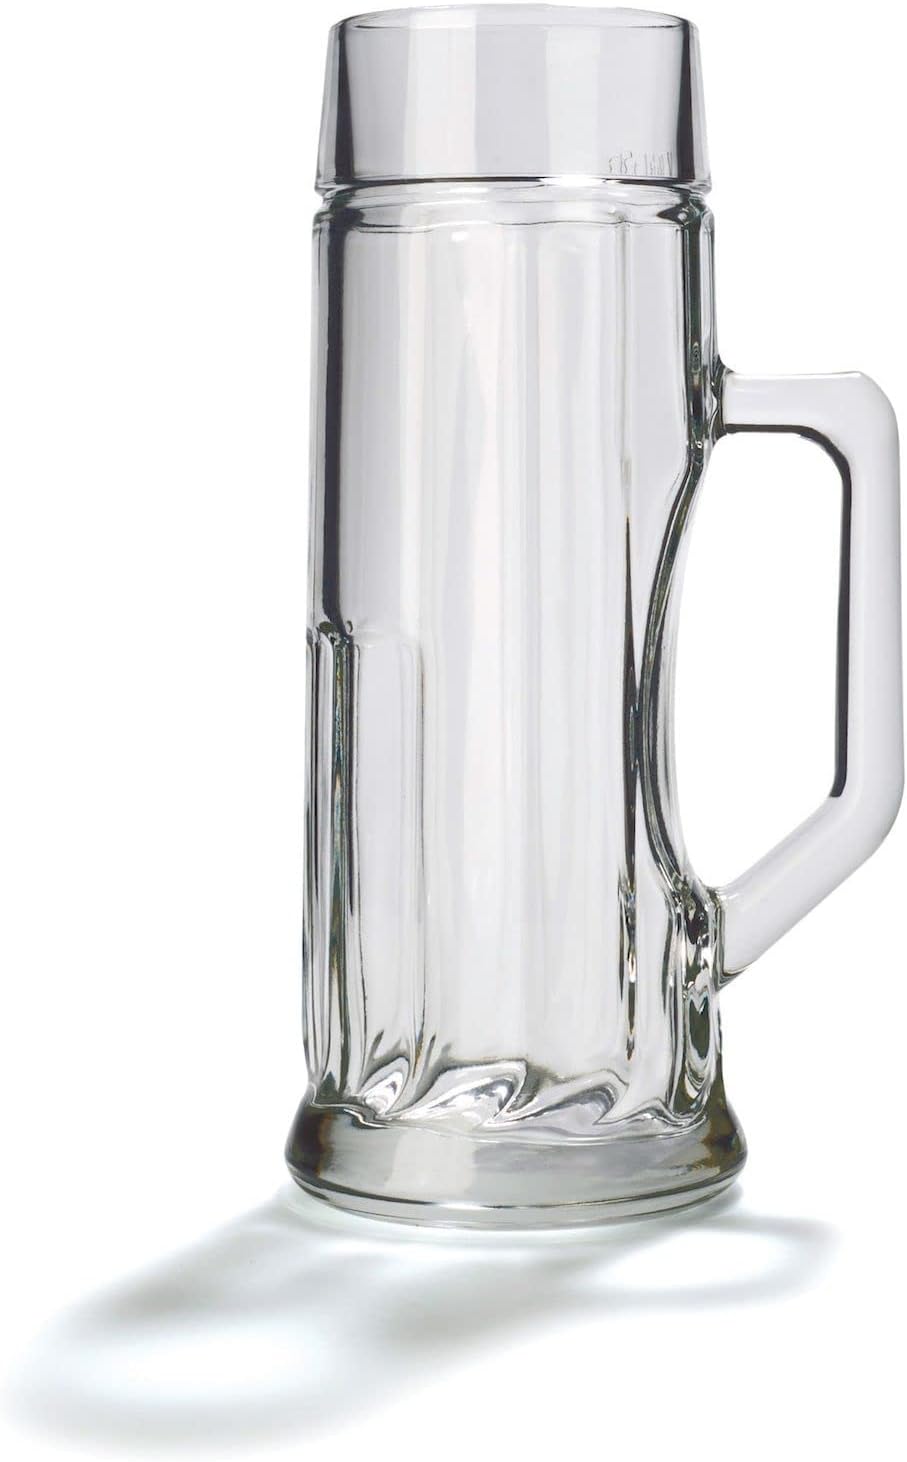 Stölzle Oberglas Beer Mugs Premium Ribbed / Set of 6 Beer Mugs 0.5 Lites / Sturdy Beer Jug / Beer Glasses 0.5 Litres Made of Soda Lime Glass / Beer MUG 0.5 L Dishwasher Safe